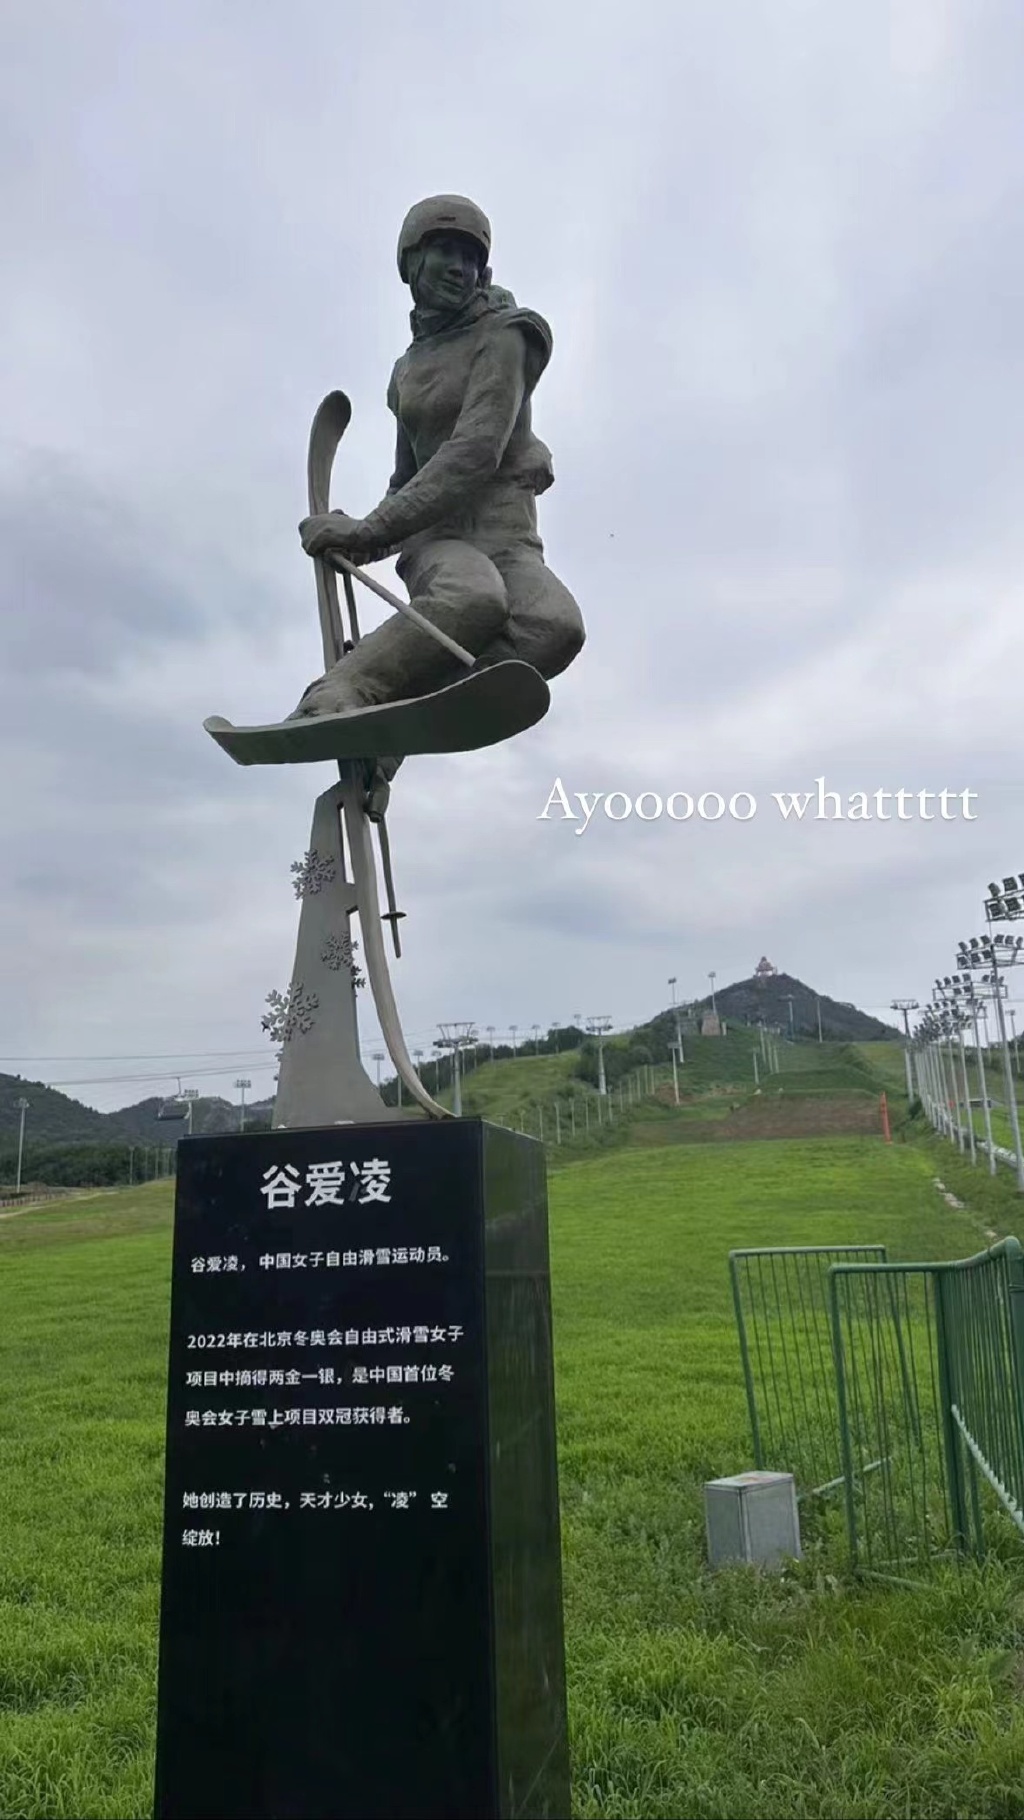 像吗？ ​​​谷爱凌雕像近日在北京南山雪场落成，谷爱凌本人转发